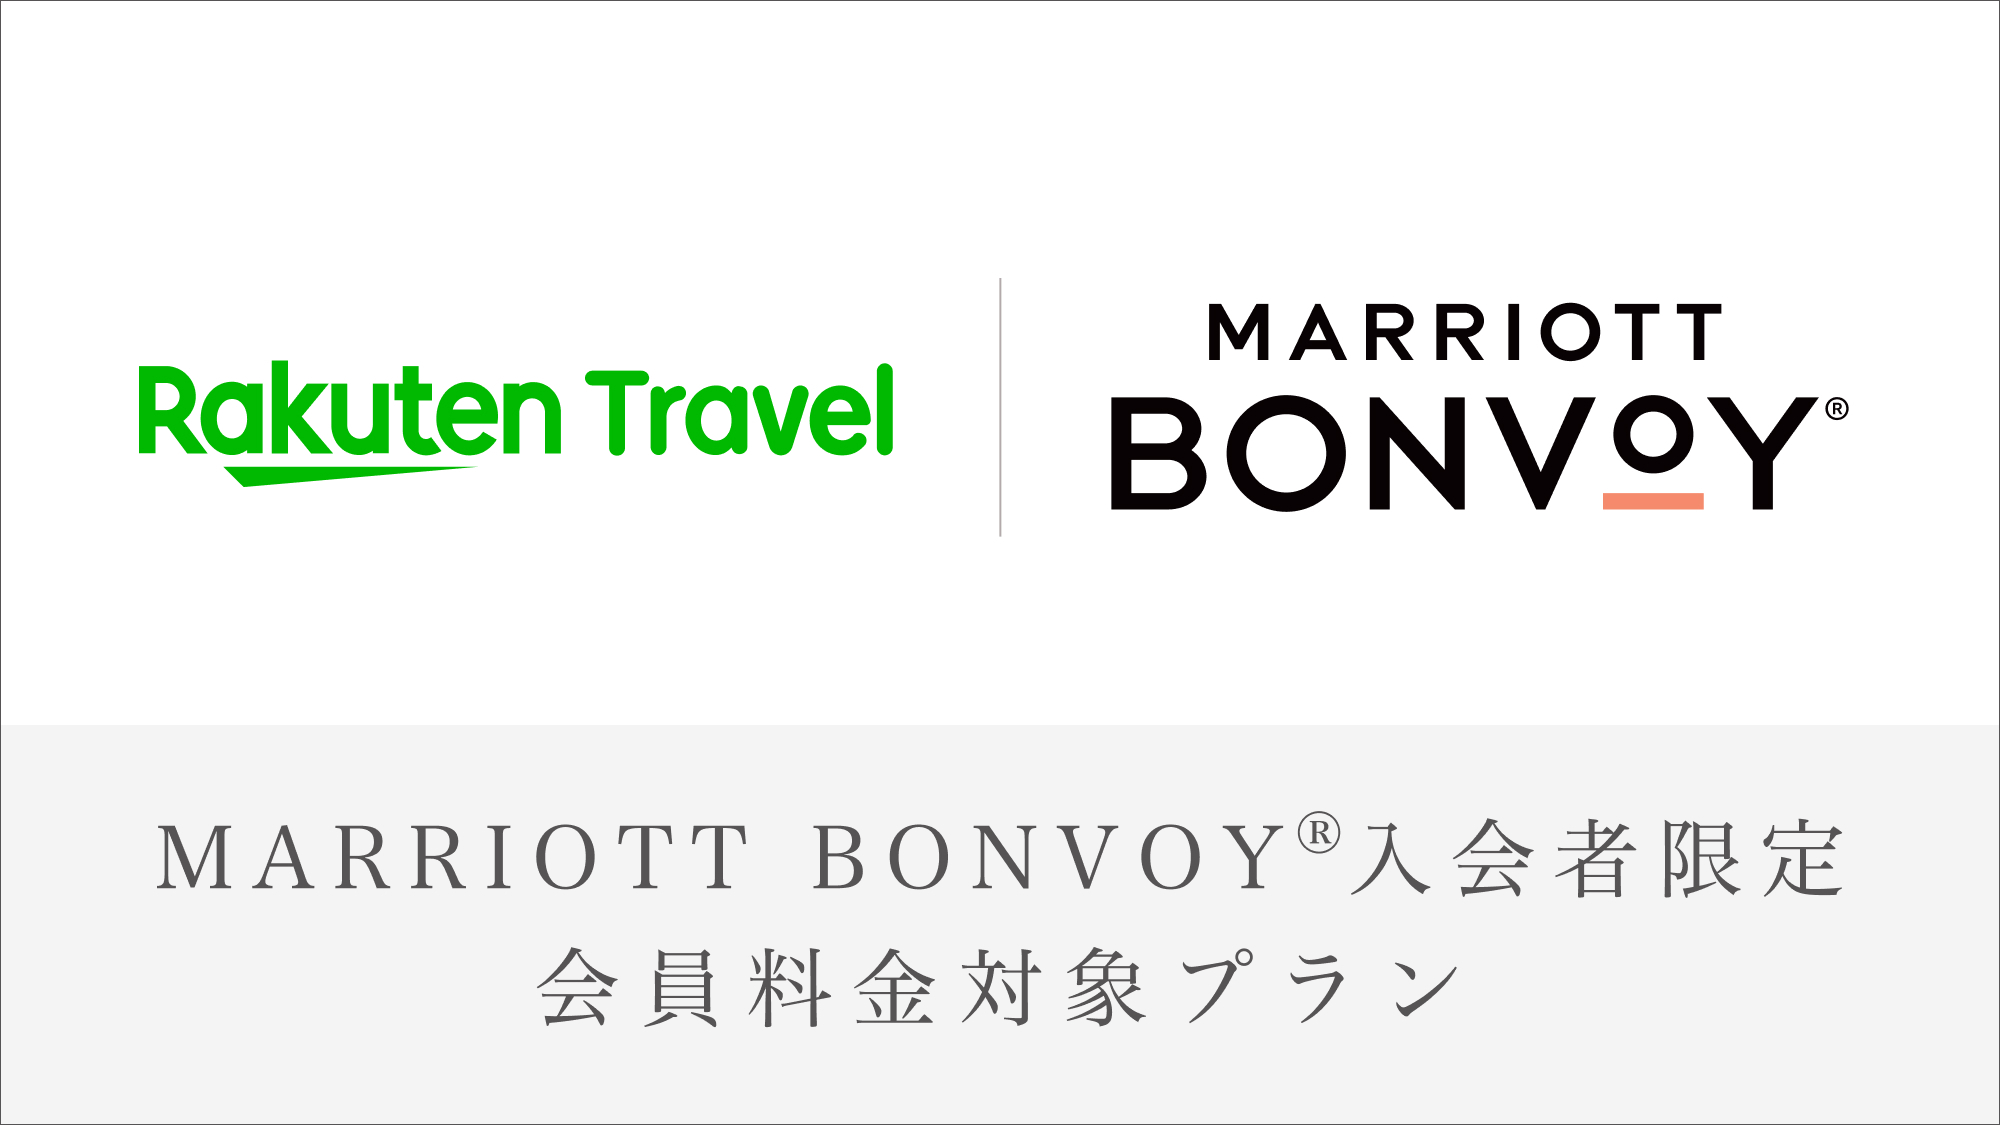 【Marriott Bonvoy会員対象プラン・連泊】フェアフィールドを拠点に郡上を満喫旅